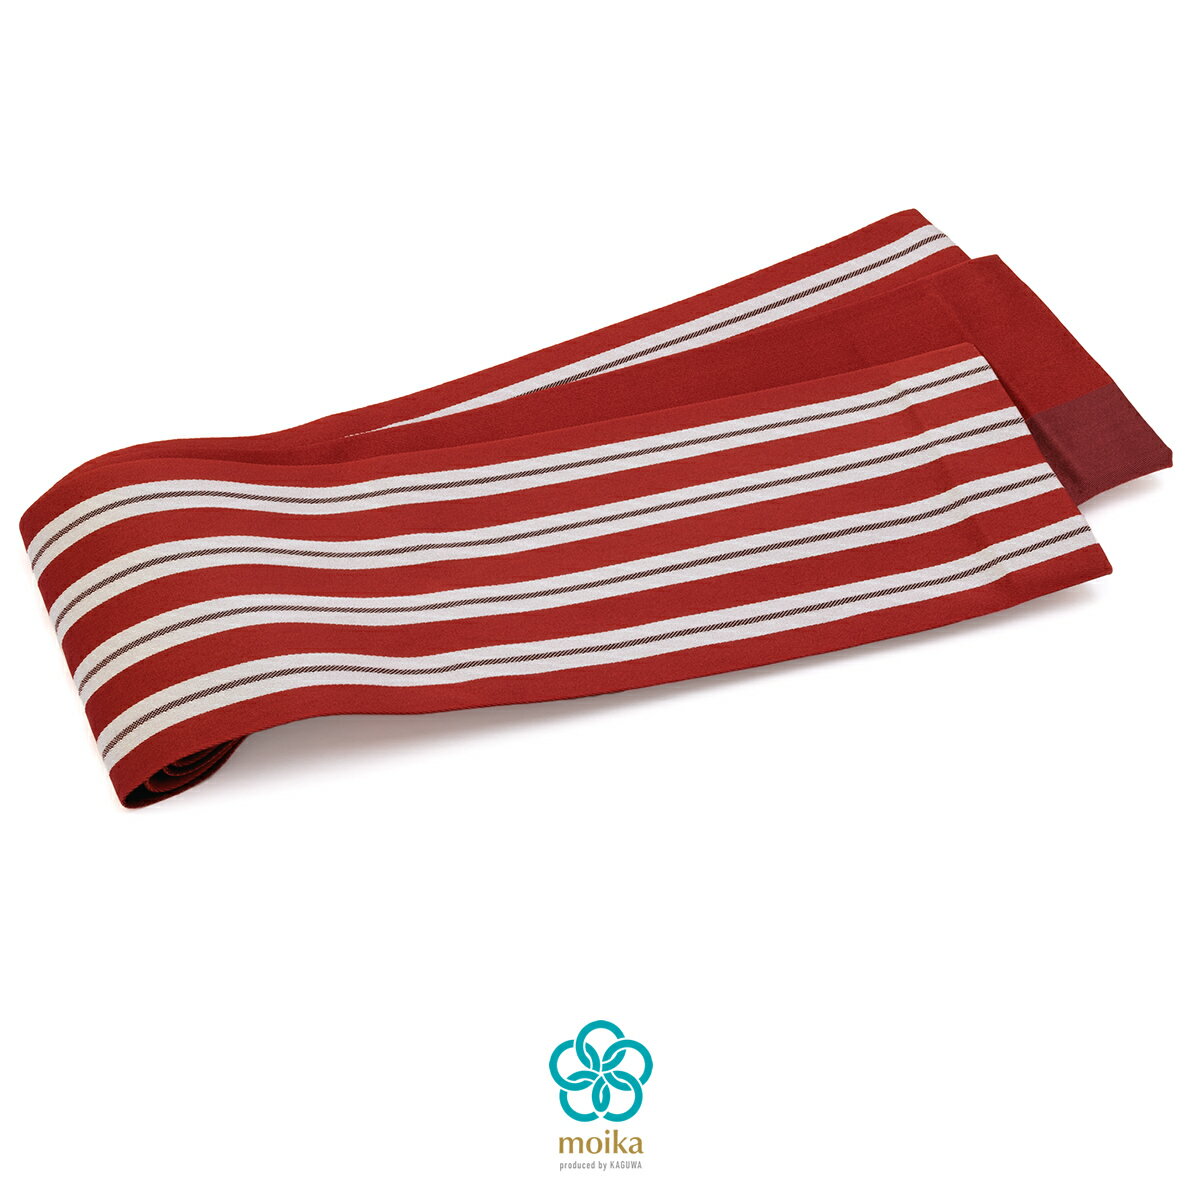 半幅帯 リバーシブル 浴衣 帯 moika（モイカ） 赤 レッド 縞 ストライプ シンプル モダン 小紋 紬 カジュアル 女性用 レディース 細帯 半巾帯 仕立て上がり